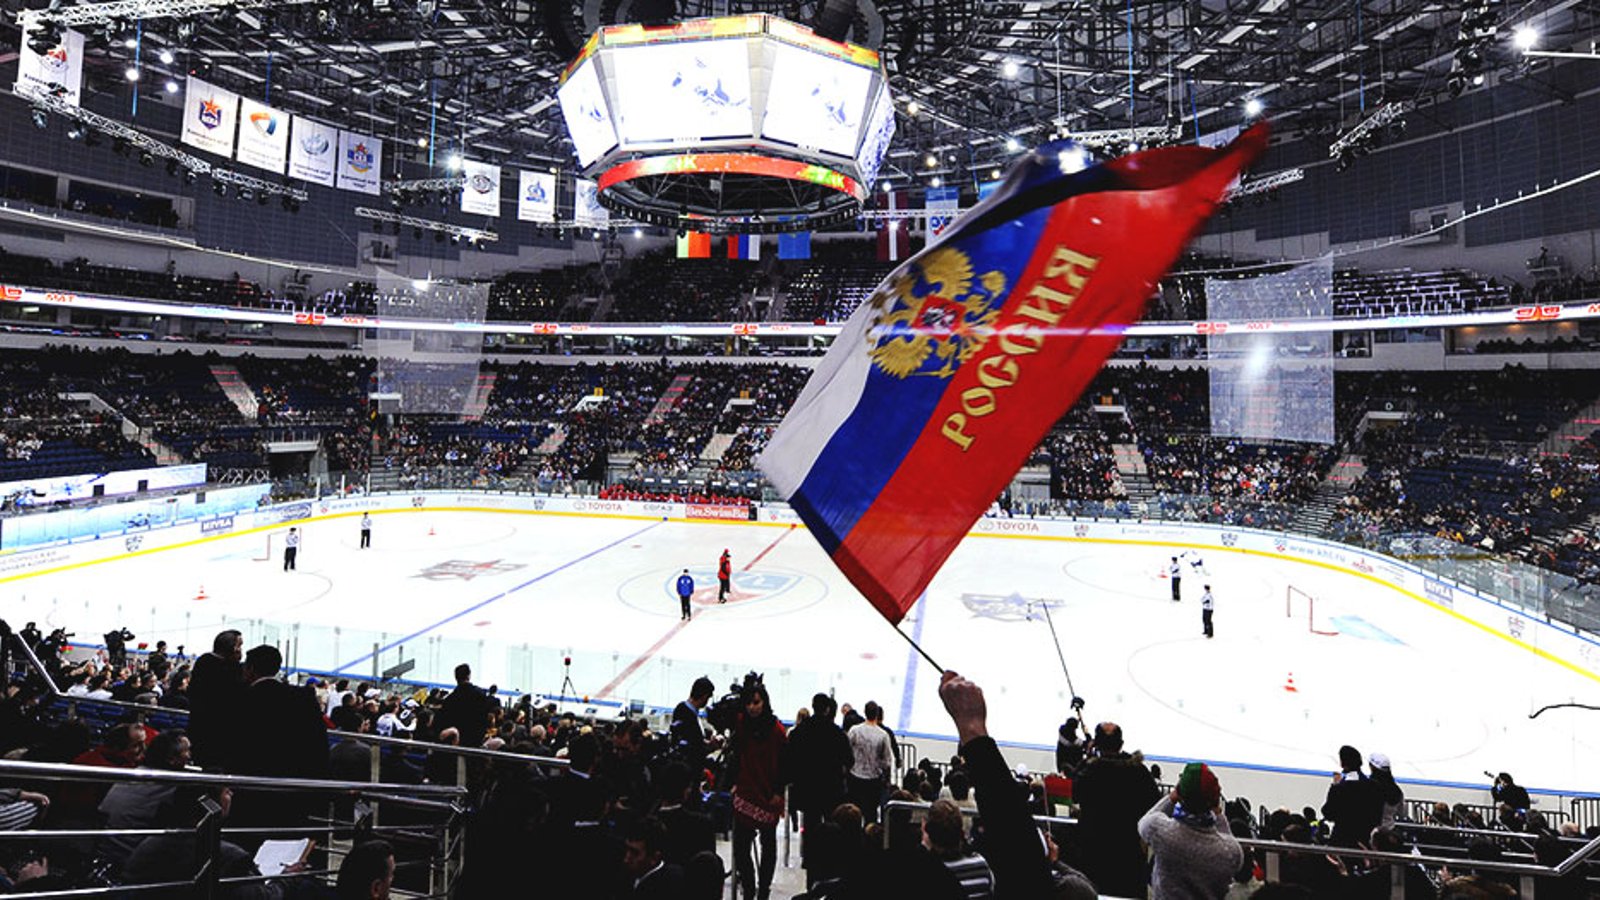 Former NHLer busted in huge KHL doping scandal